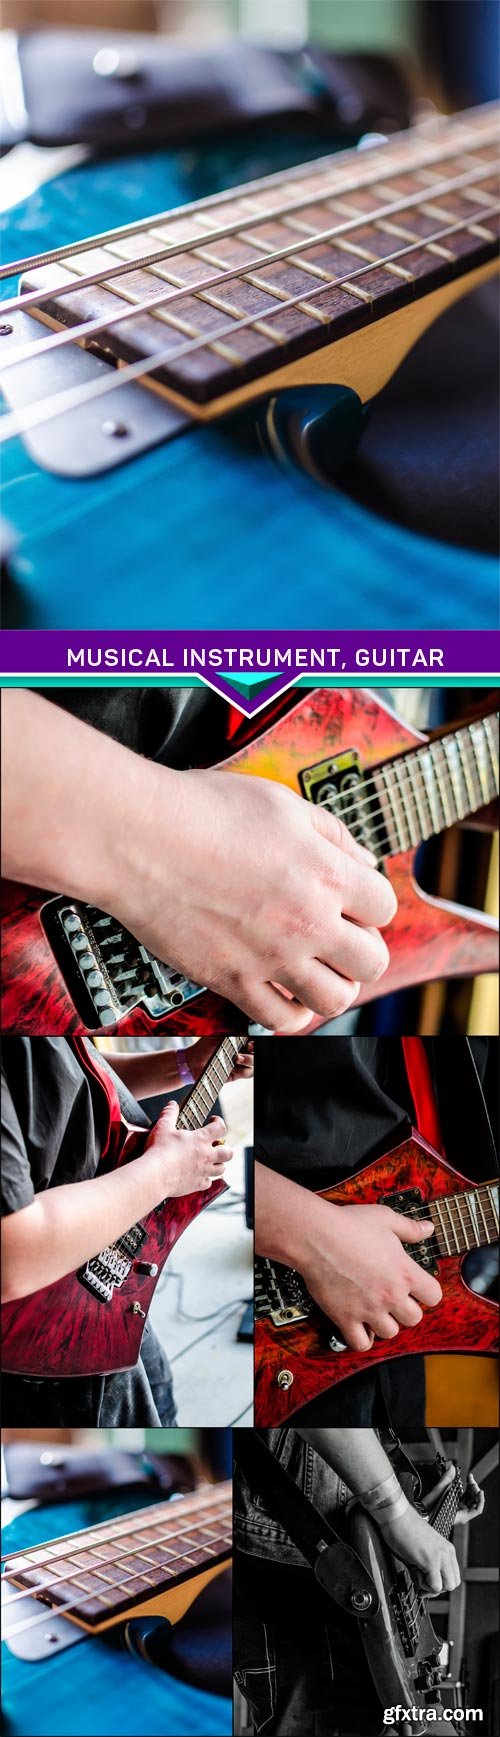 Musical instrument, guitar 5x JPEG